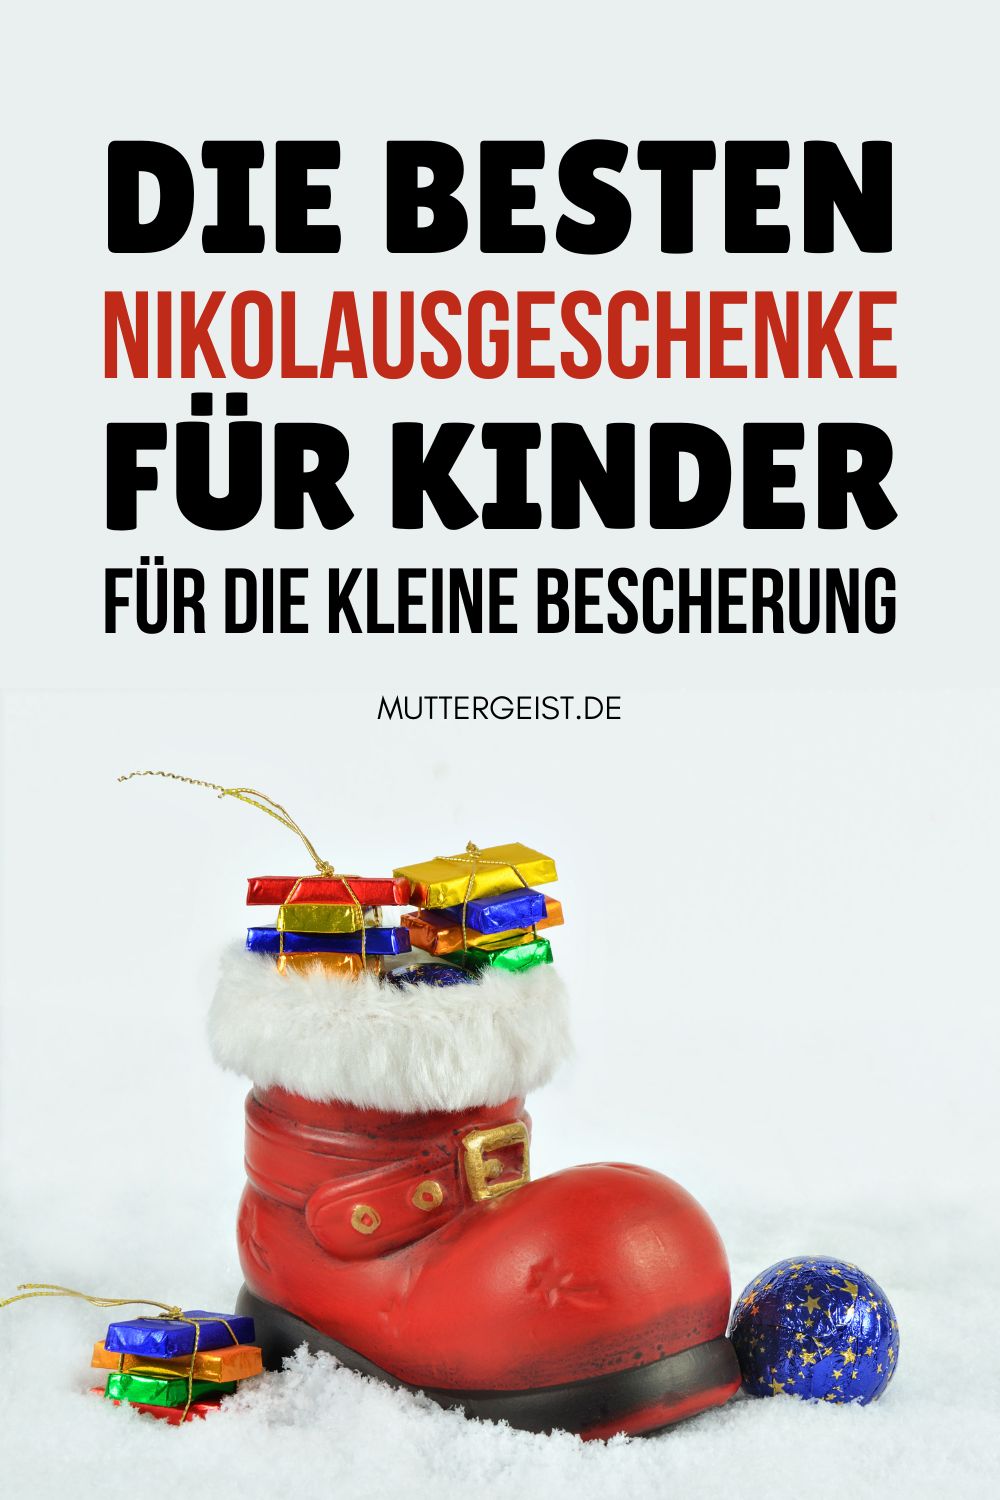 Die besten Nikolausgeschenke für Kinder für die kleine Bescherung Pinterest